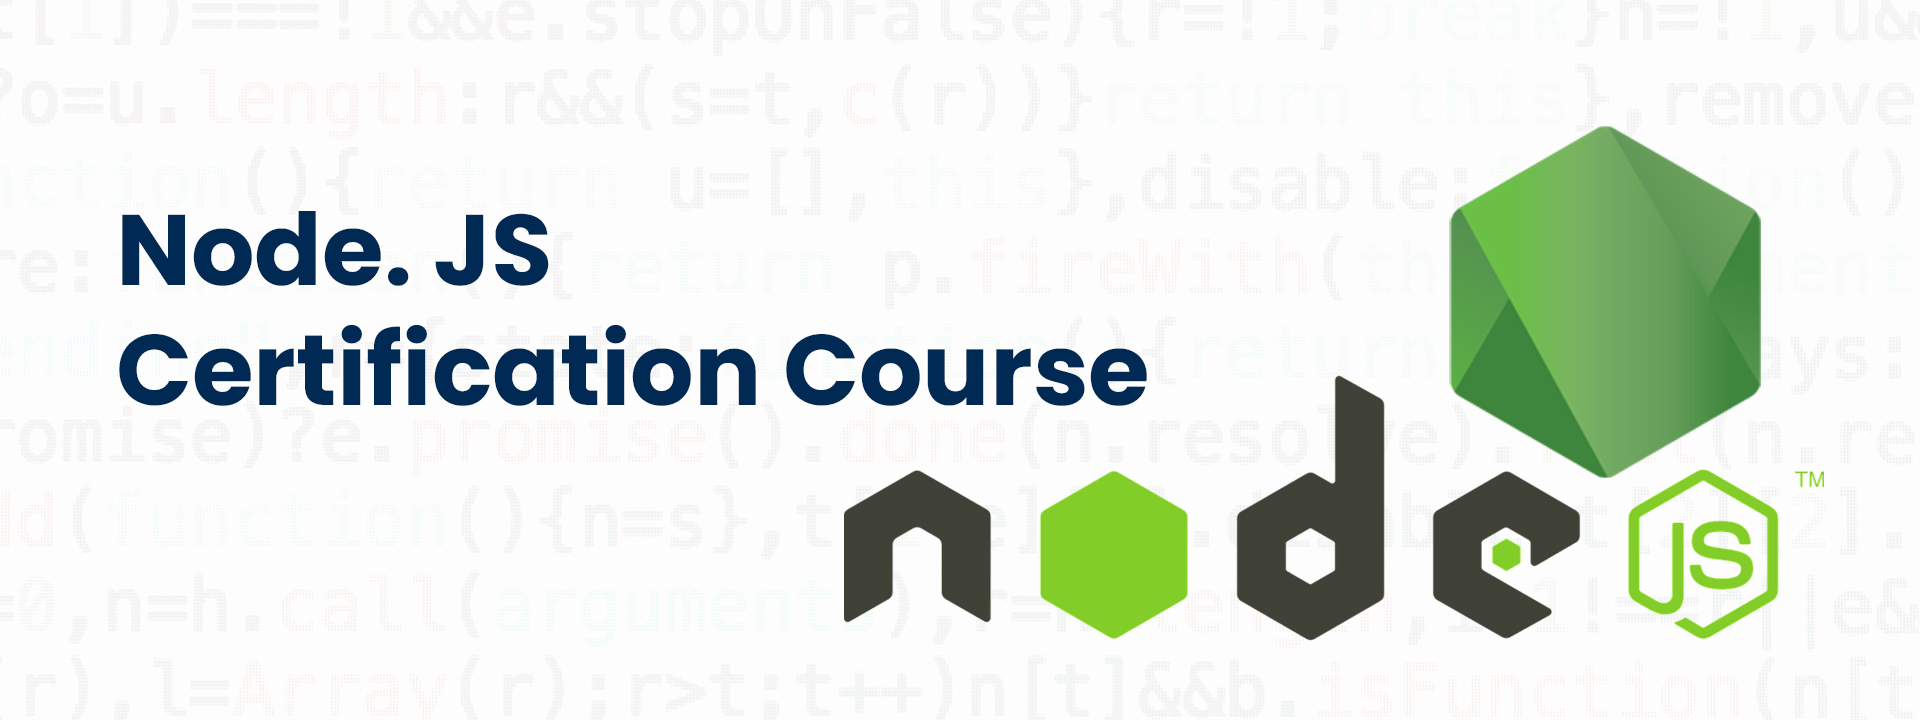 Node. JS Certification Course